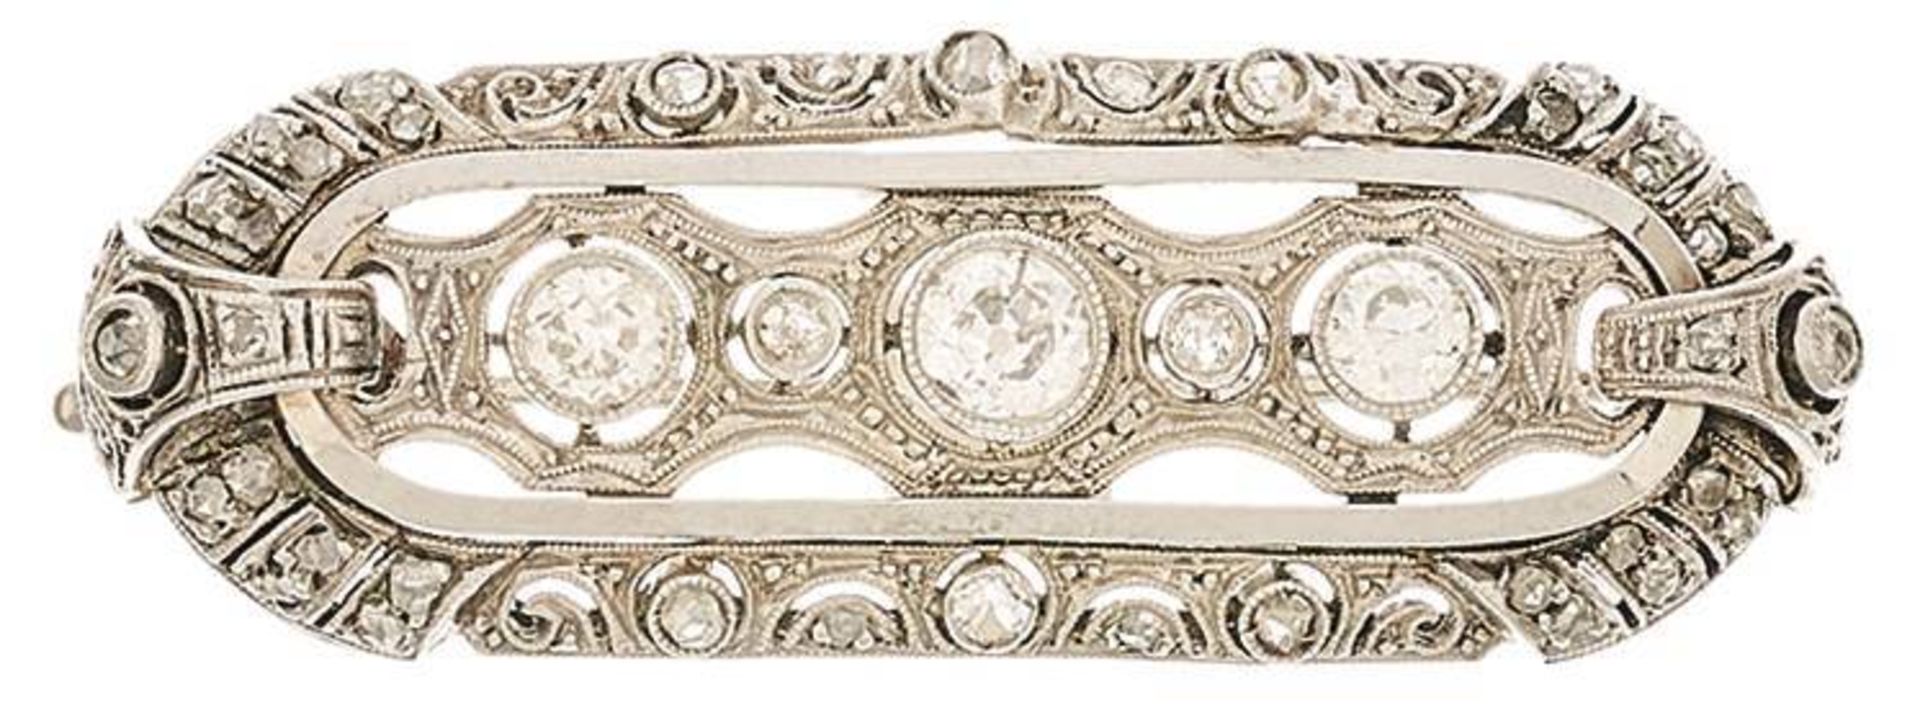 Art Déco Diamant Brosche, um 1920/1930, 750 Gold, Maße 7,8x 1,4 cm, Altschliffdiamanten und kl.